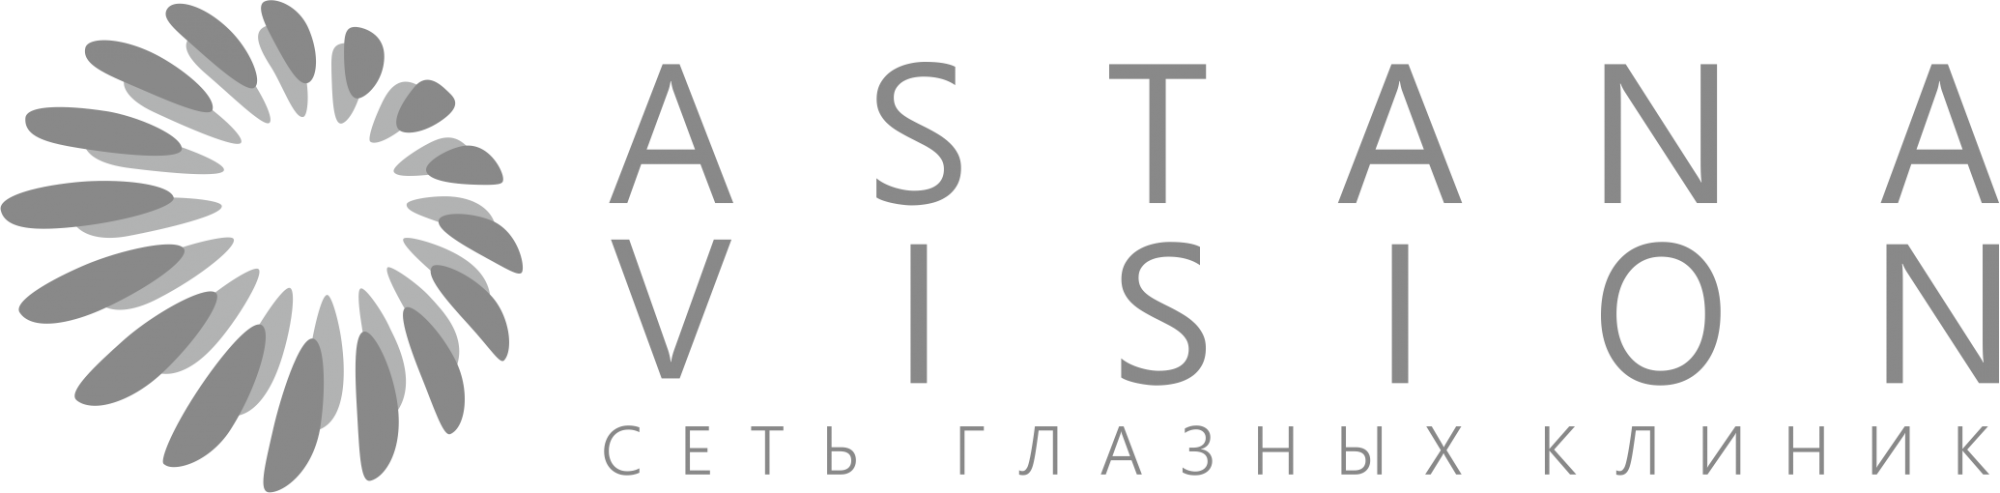 Astana Vision